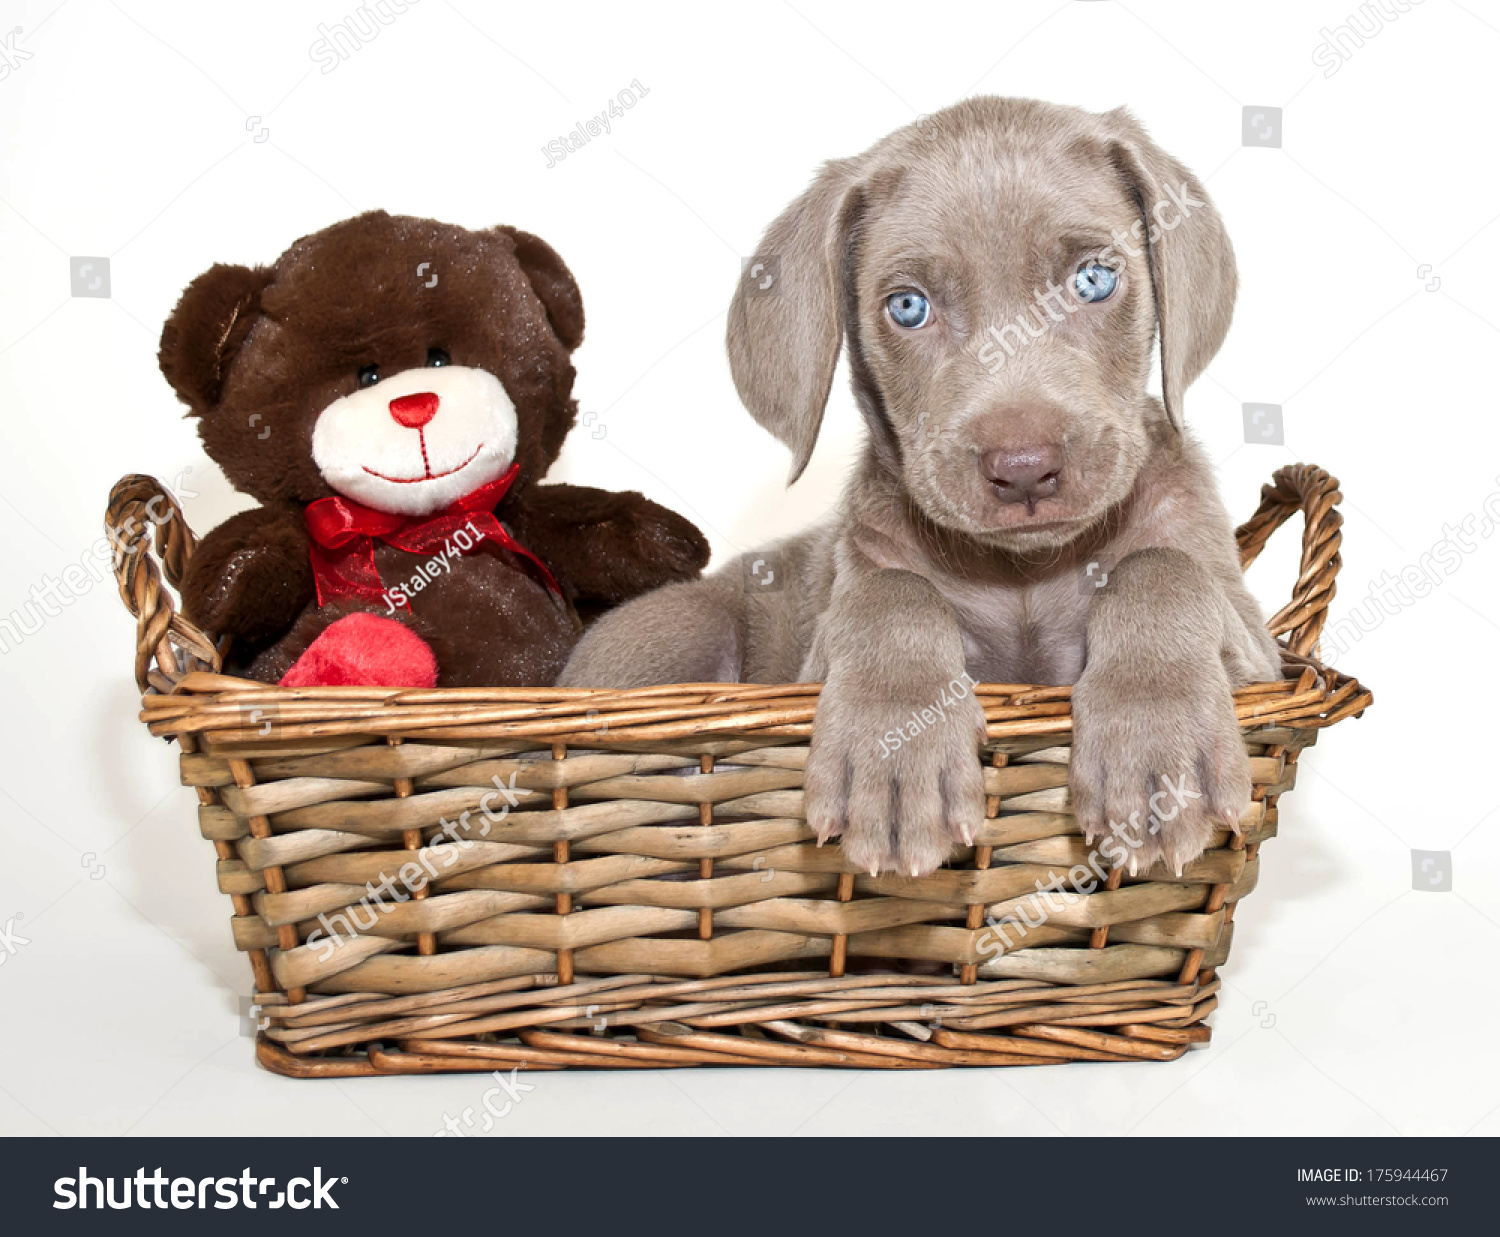 blue eyed teddy bear